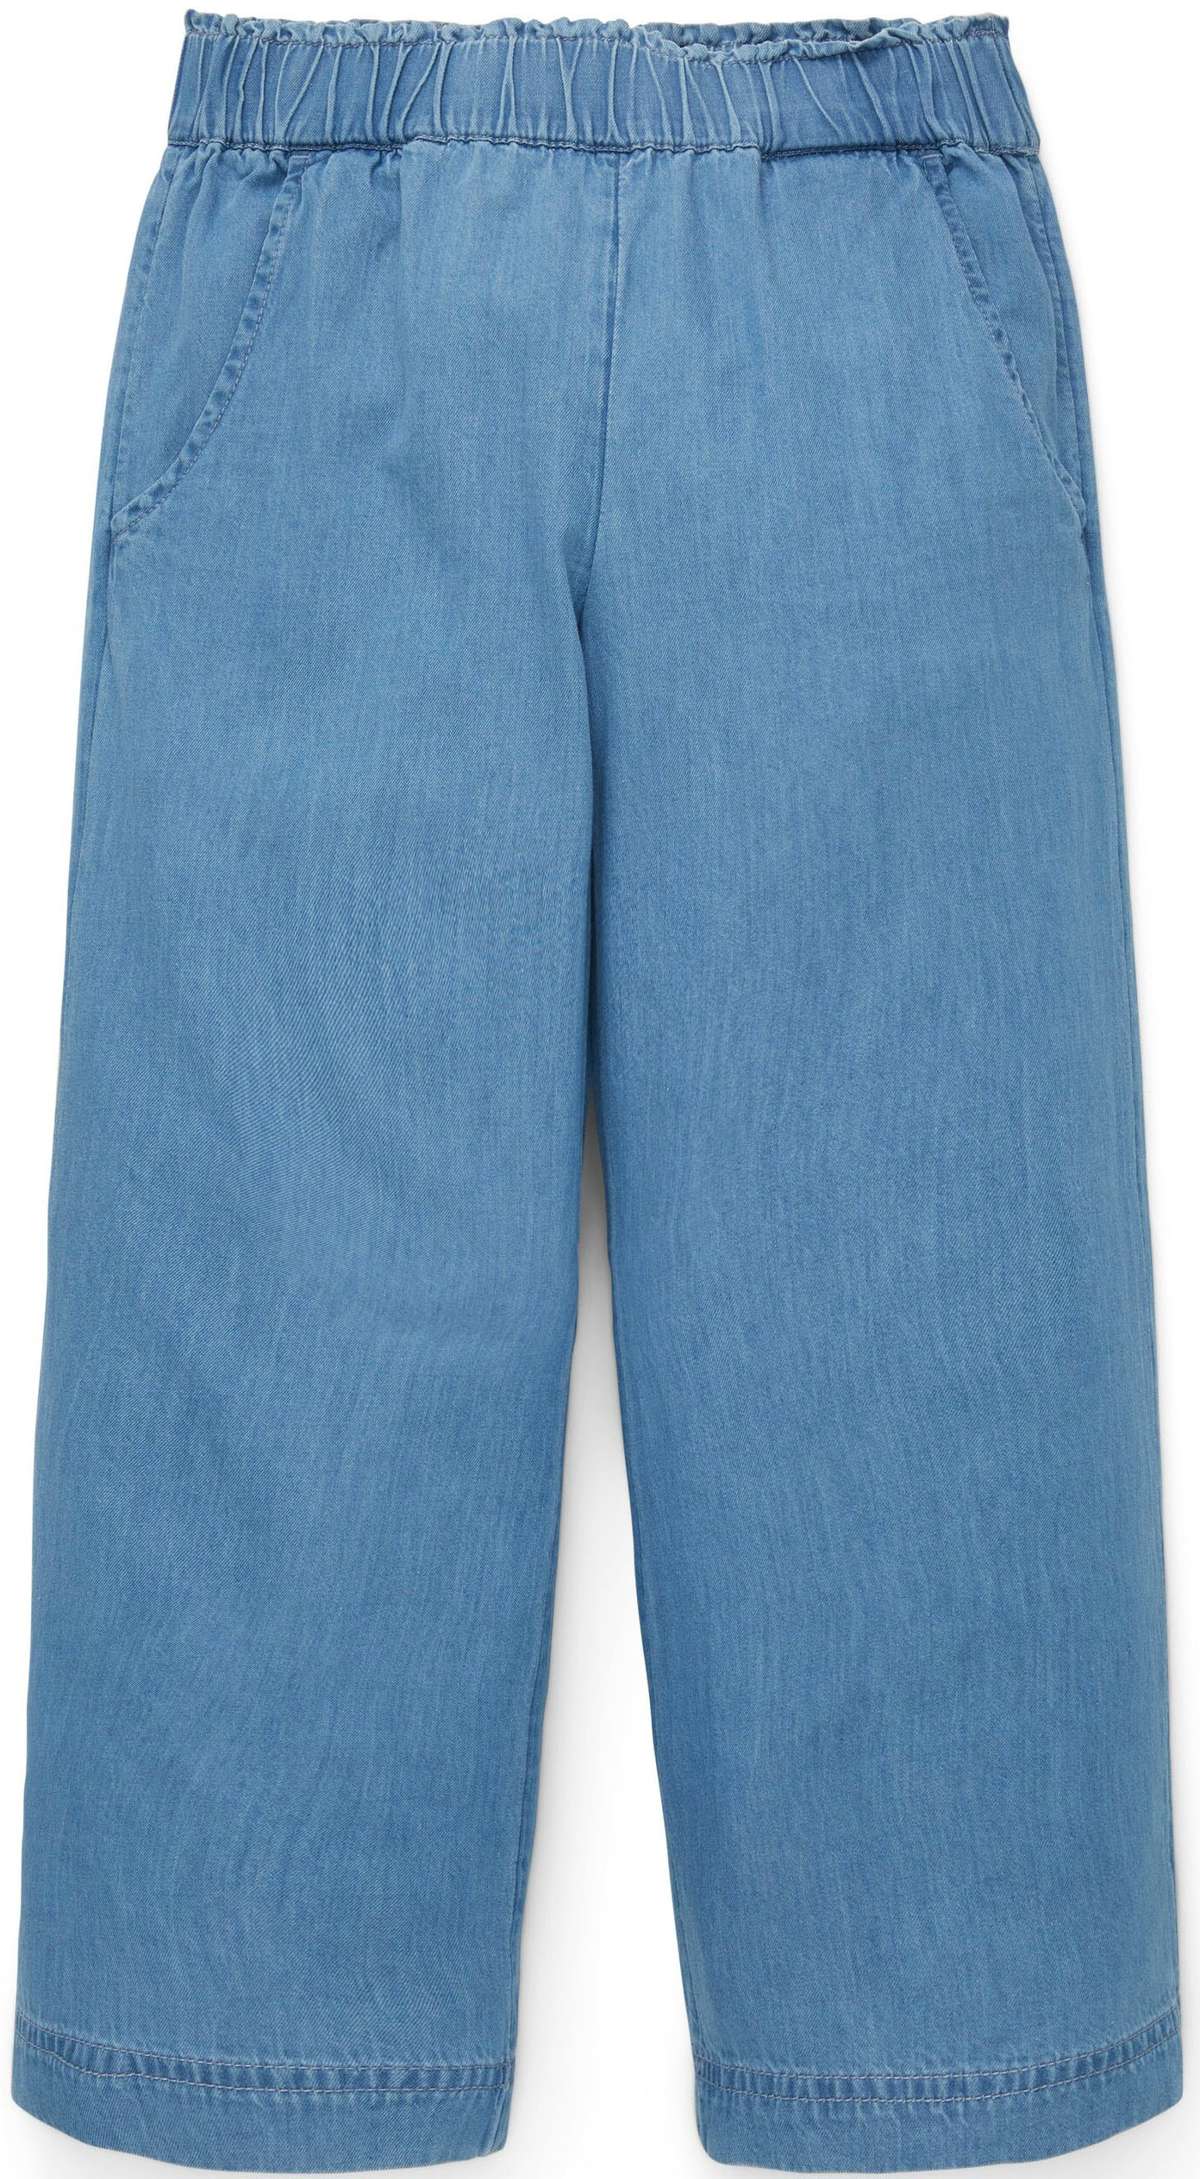 Широкие джинсы с широким эластичным поясом.